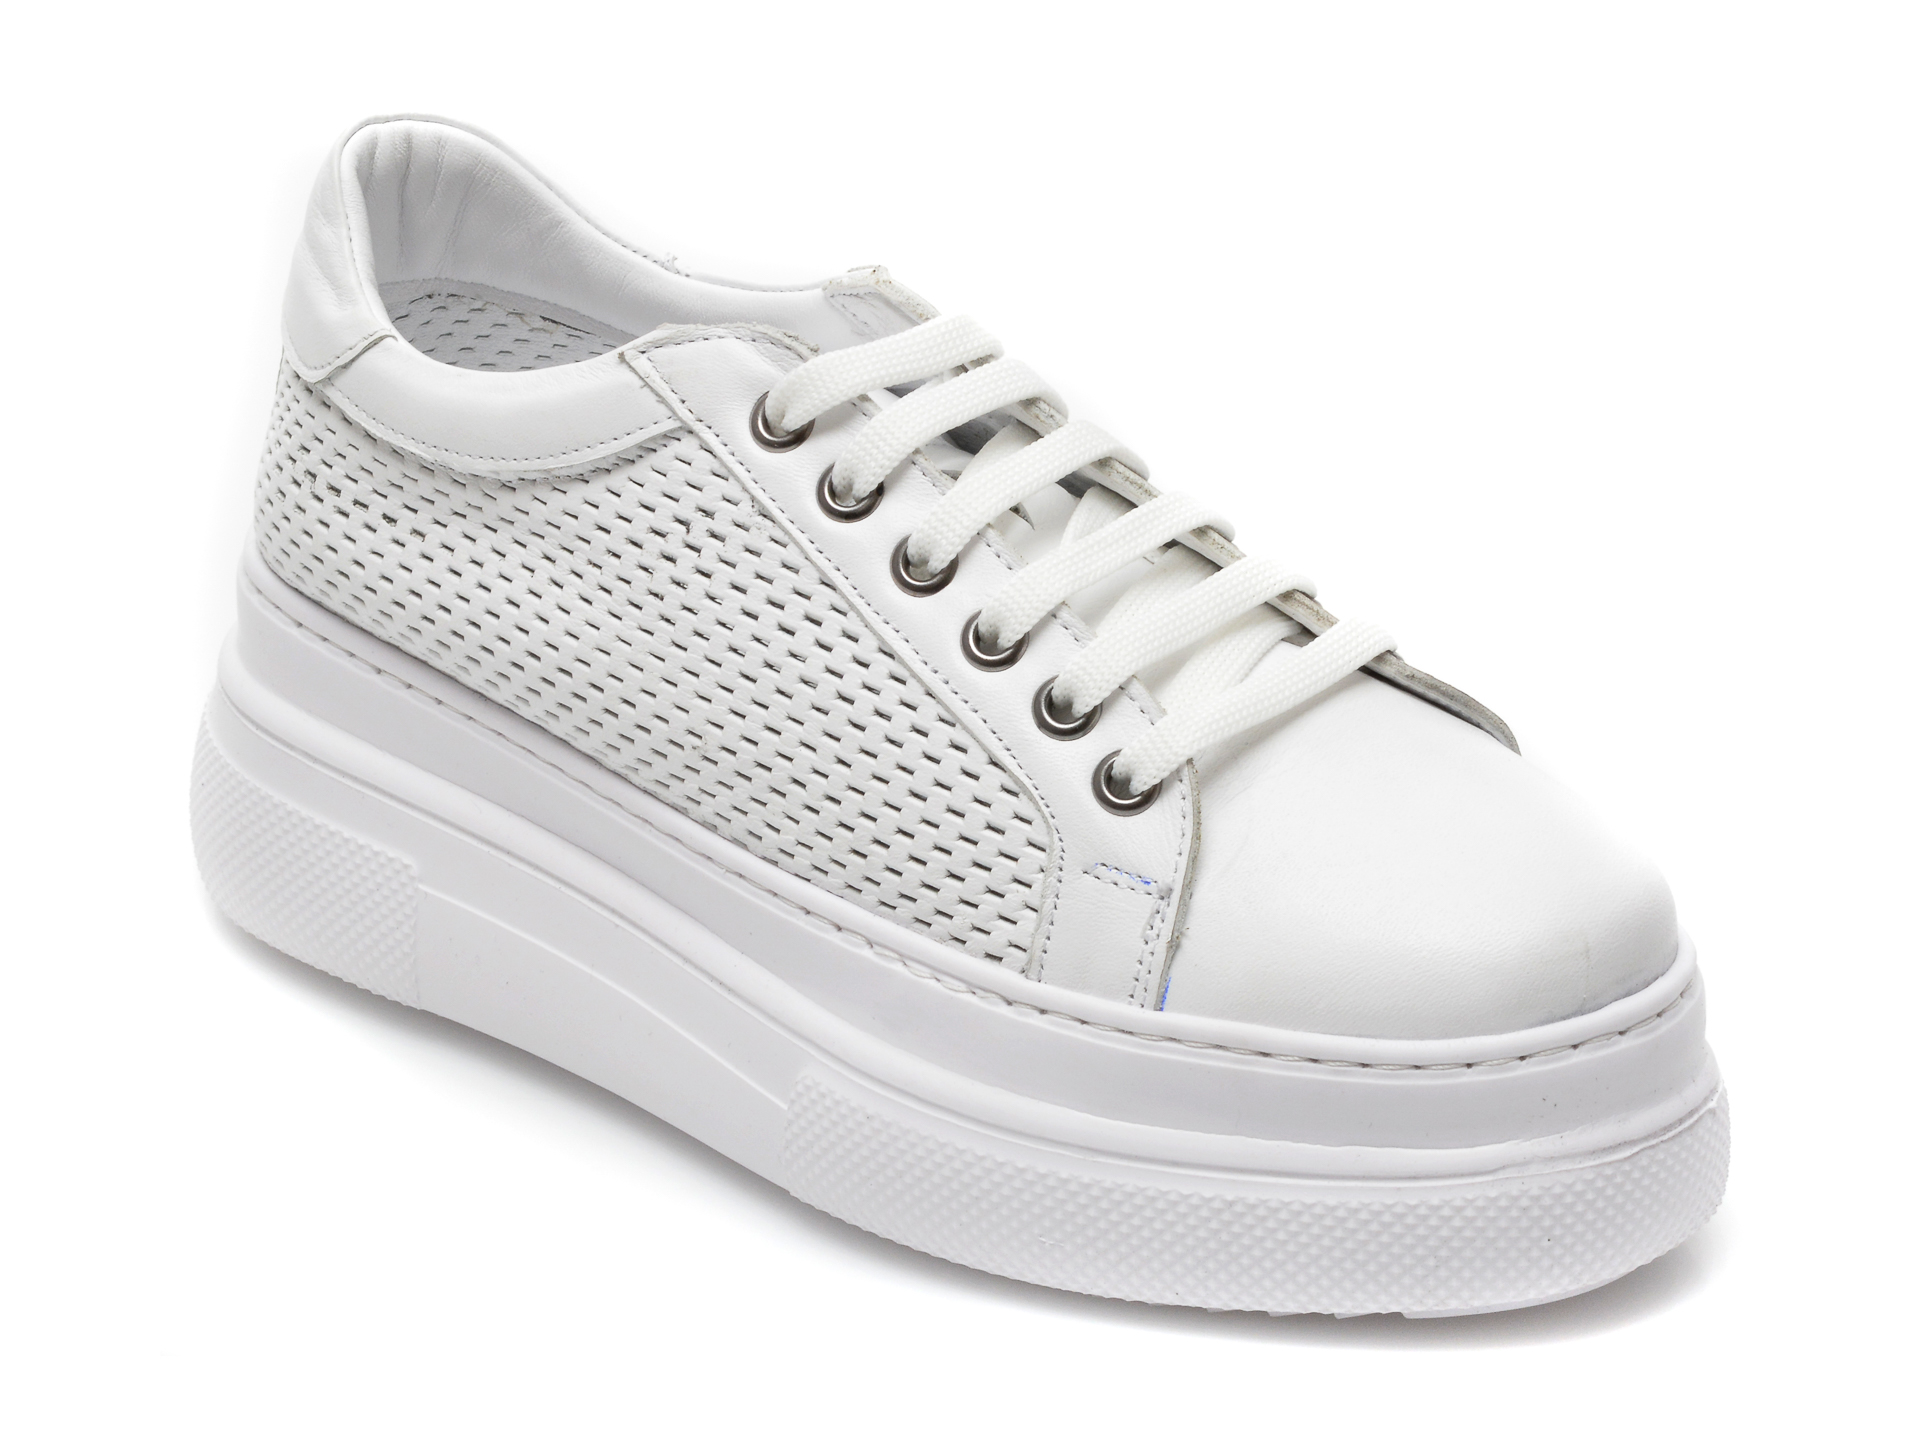 Pantofi sport FLAVIA PASSINI albi, C101, din piele naturala Flavia Passini Flavia Passini